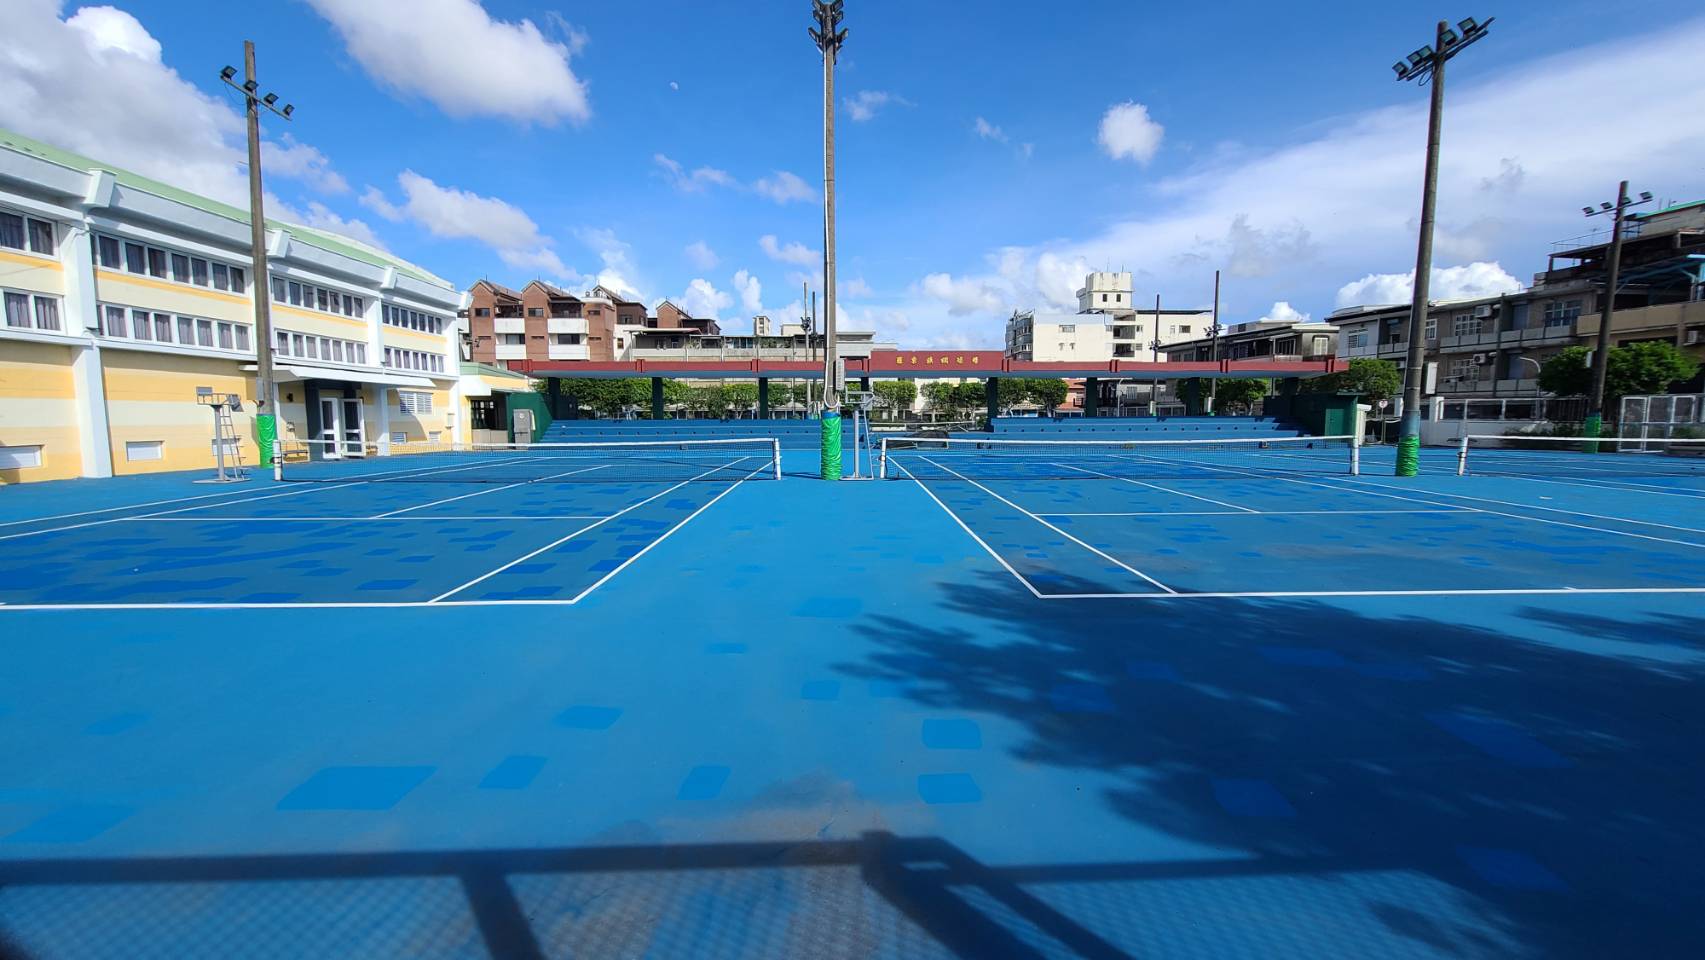 羅東鎮立網球場